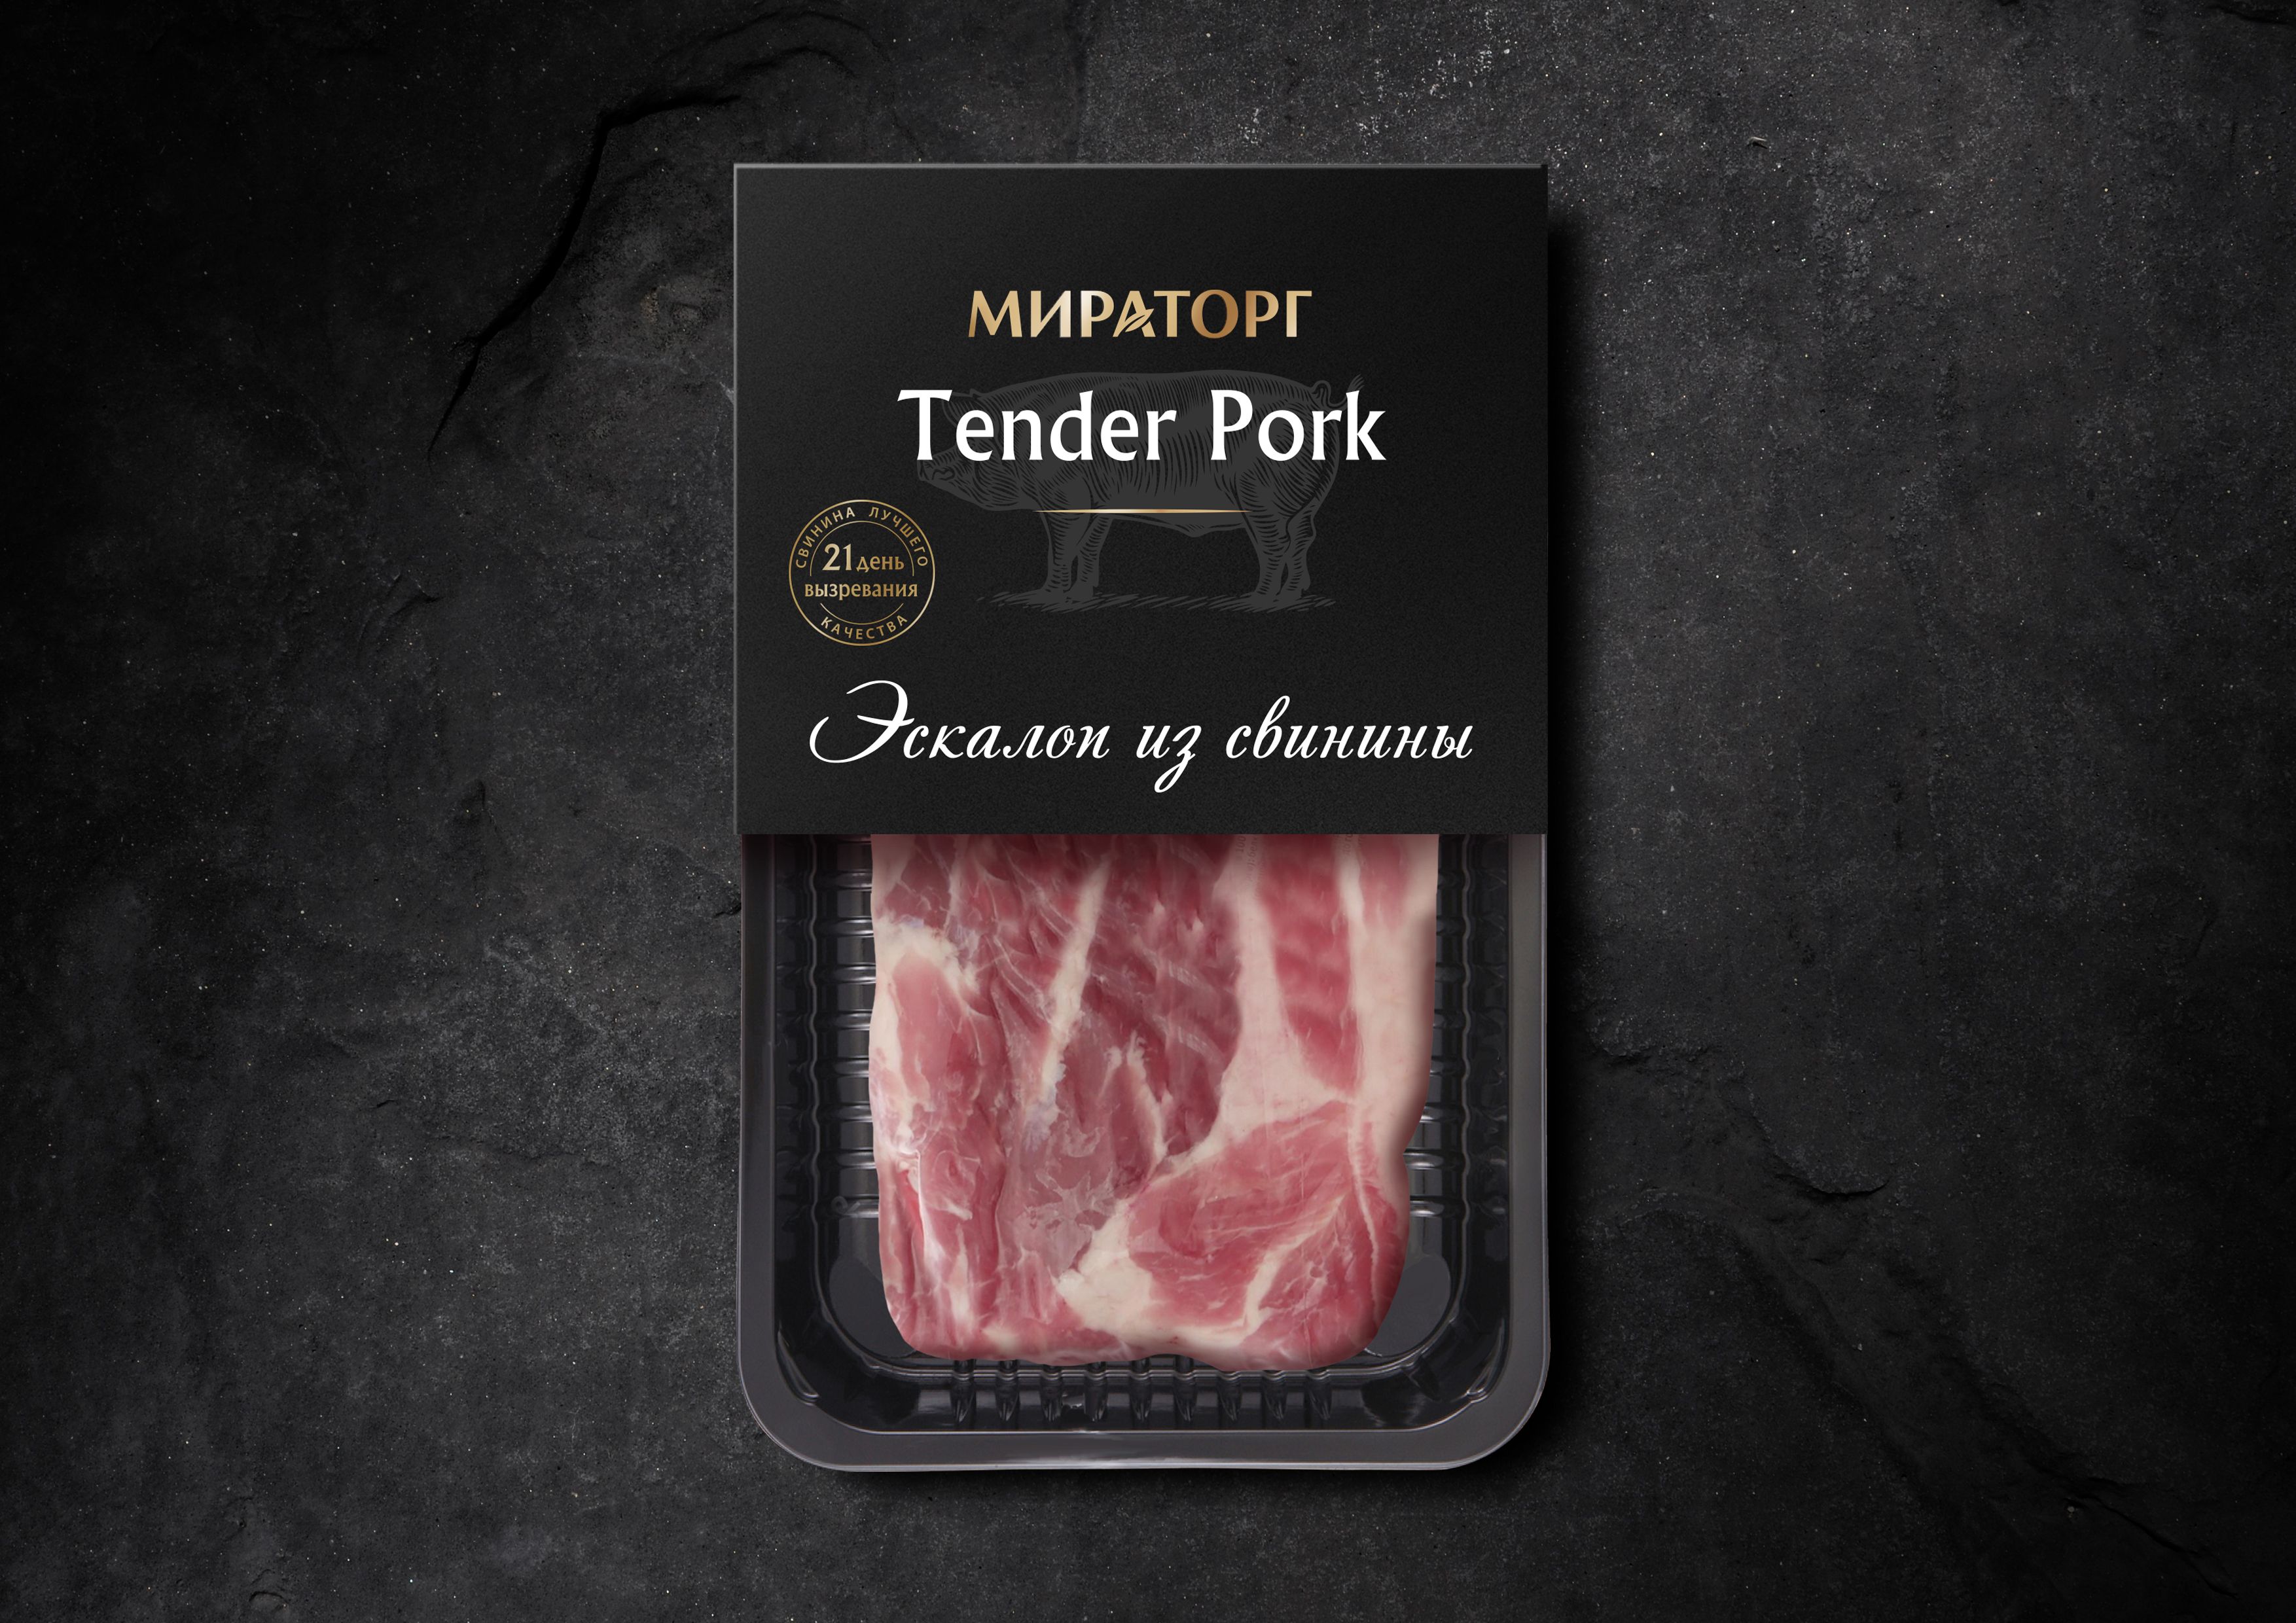 TP 1 1 - Tender Pork